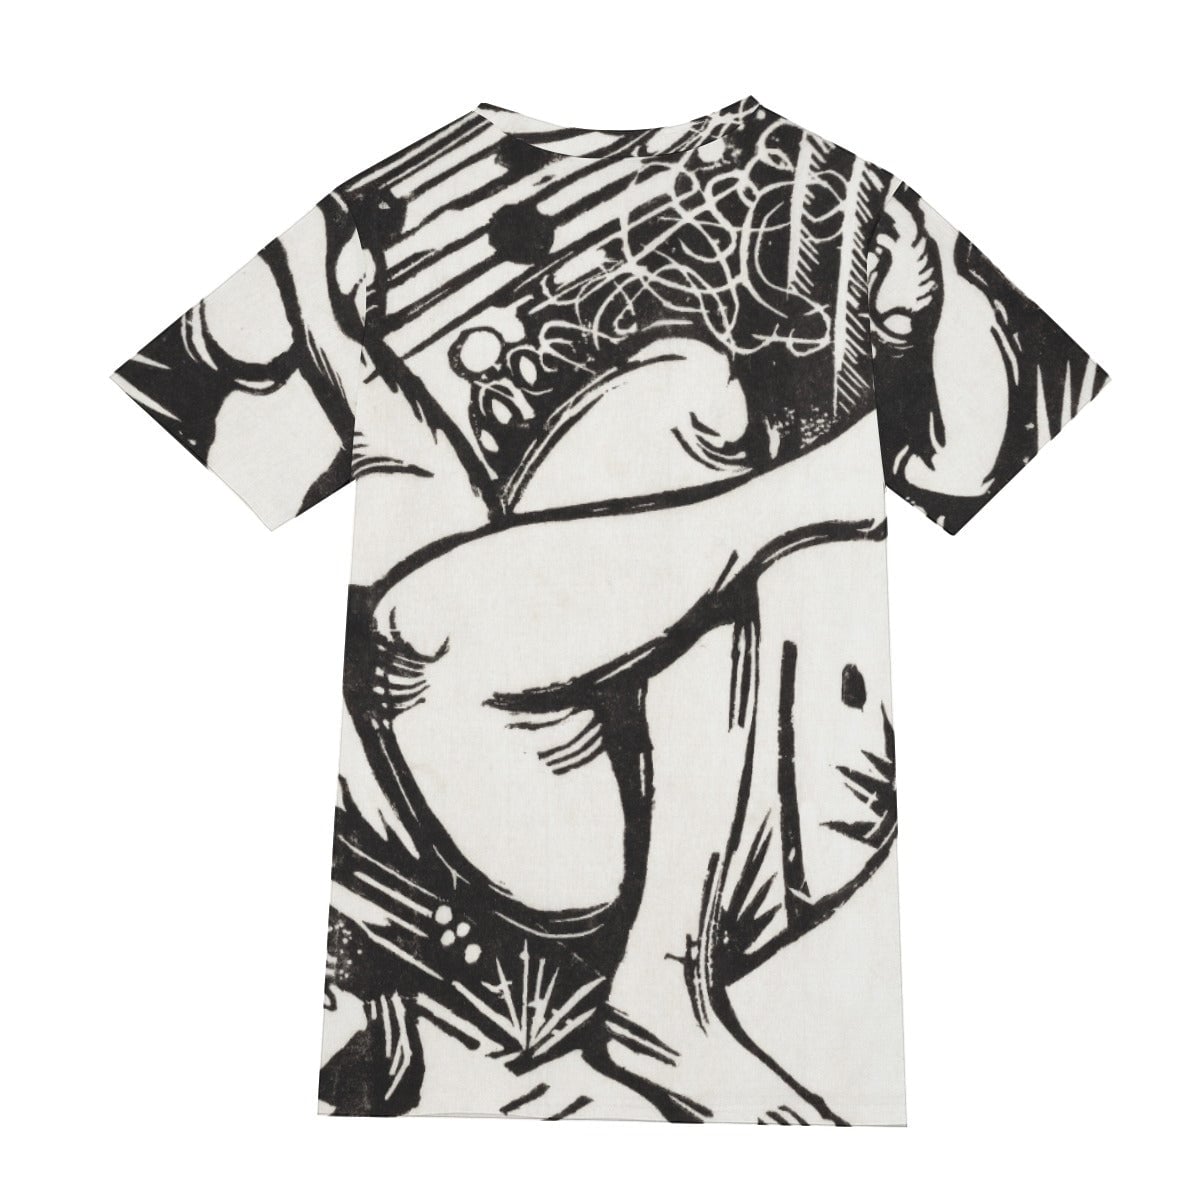 Franz Marc’s Sleeping Shepherdess T-Shirt - Famous Art Tee